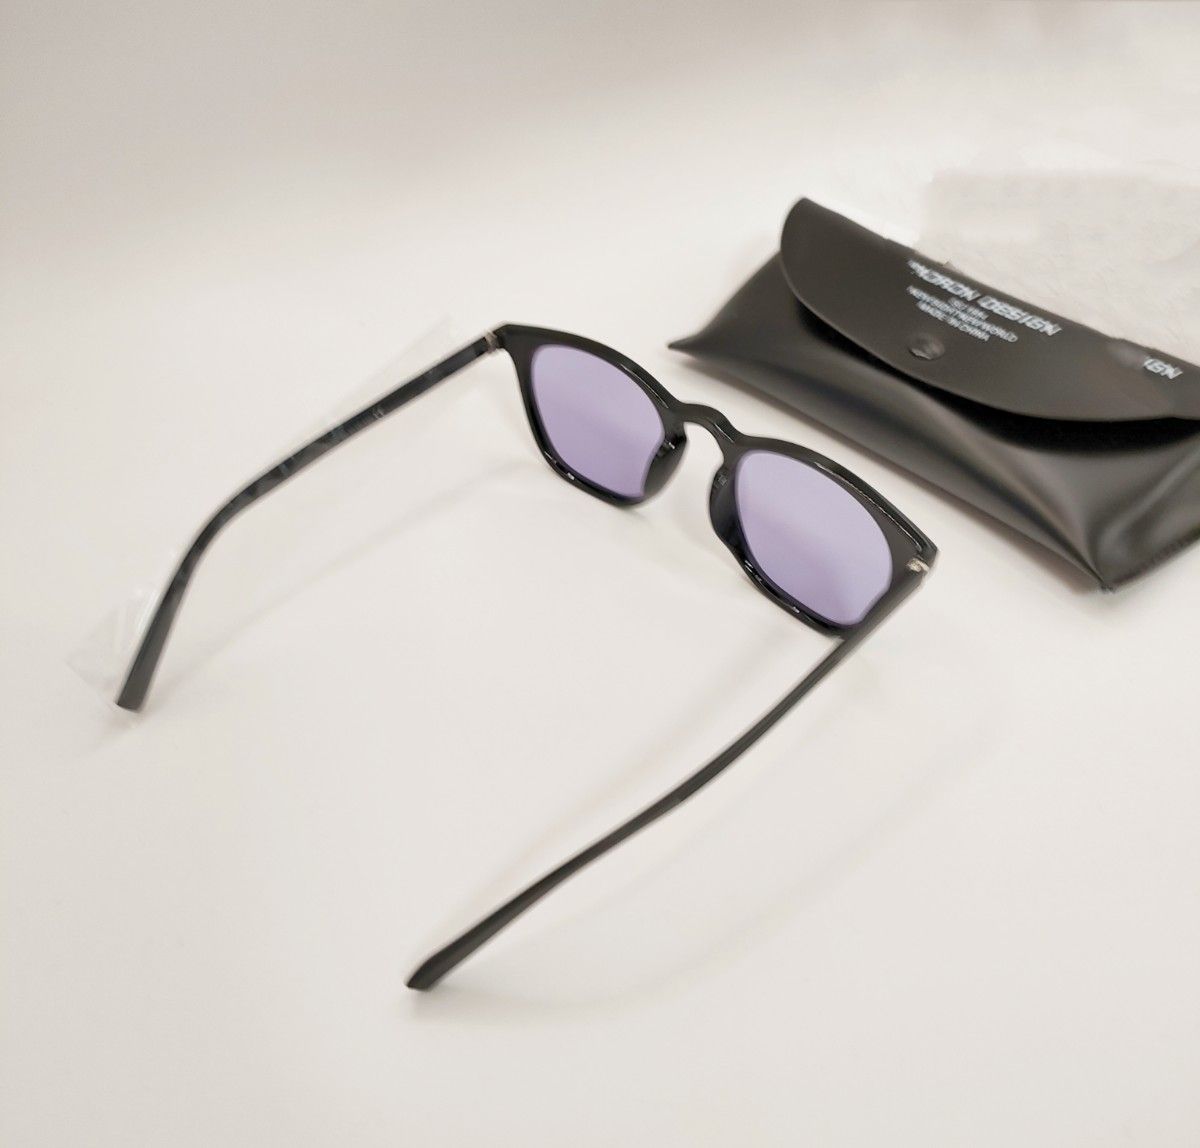 サングラス カラーレンズ メンズ レディース 偏光 調光 薄い色 UVカット変色 眼鏡 ケース付き